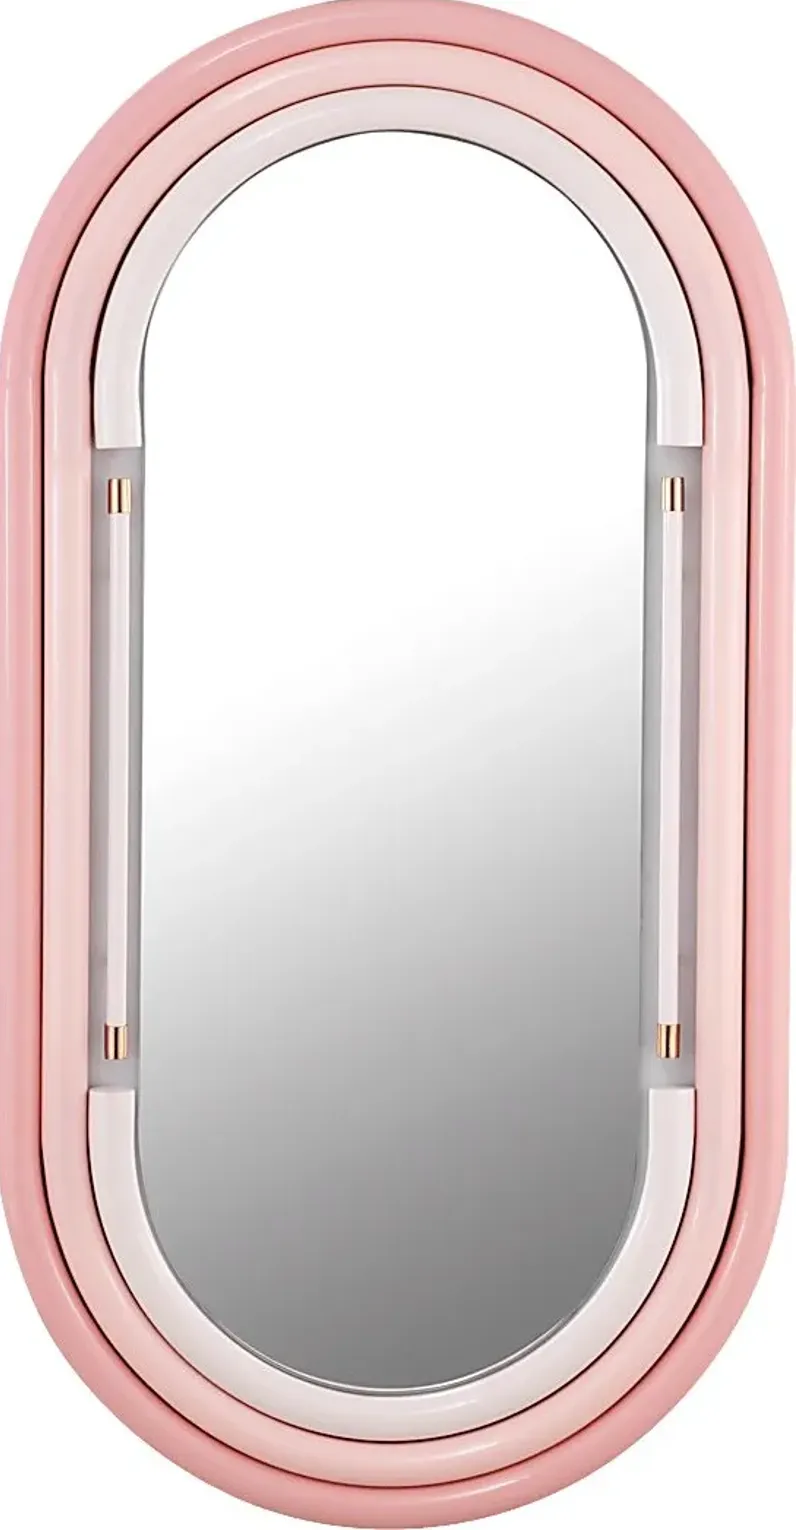 Coada II Pink Wall Mirror